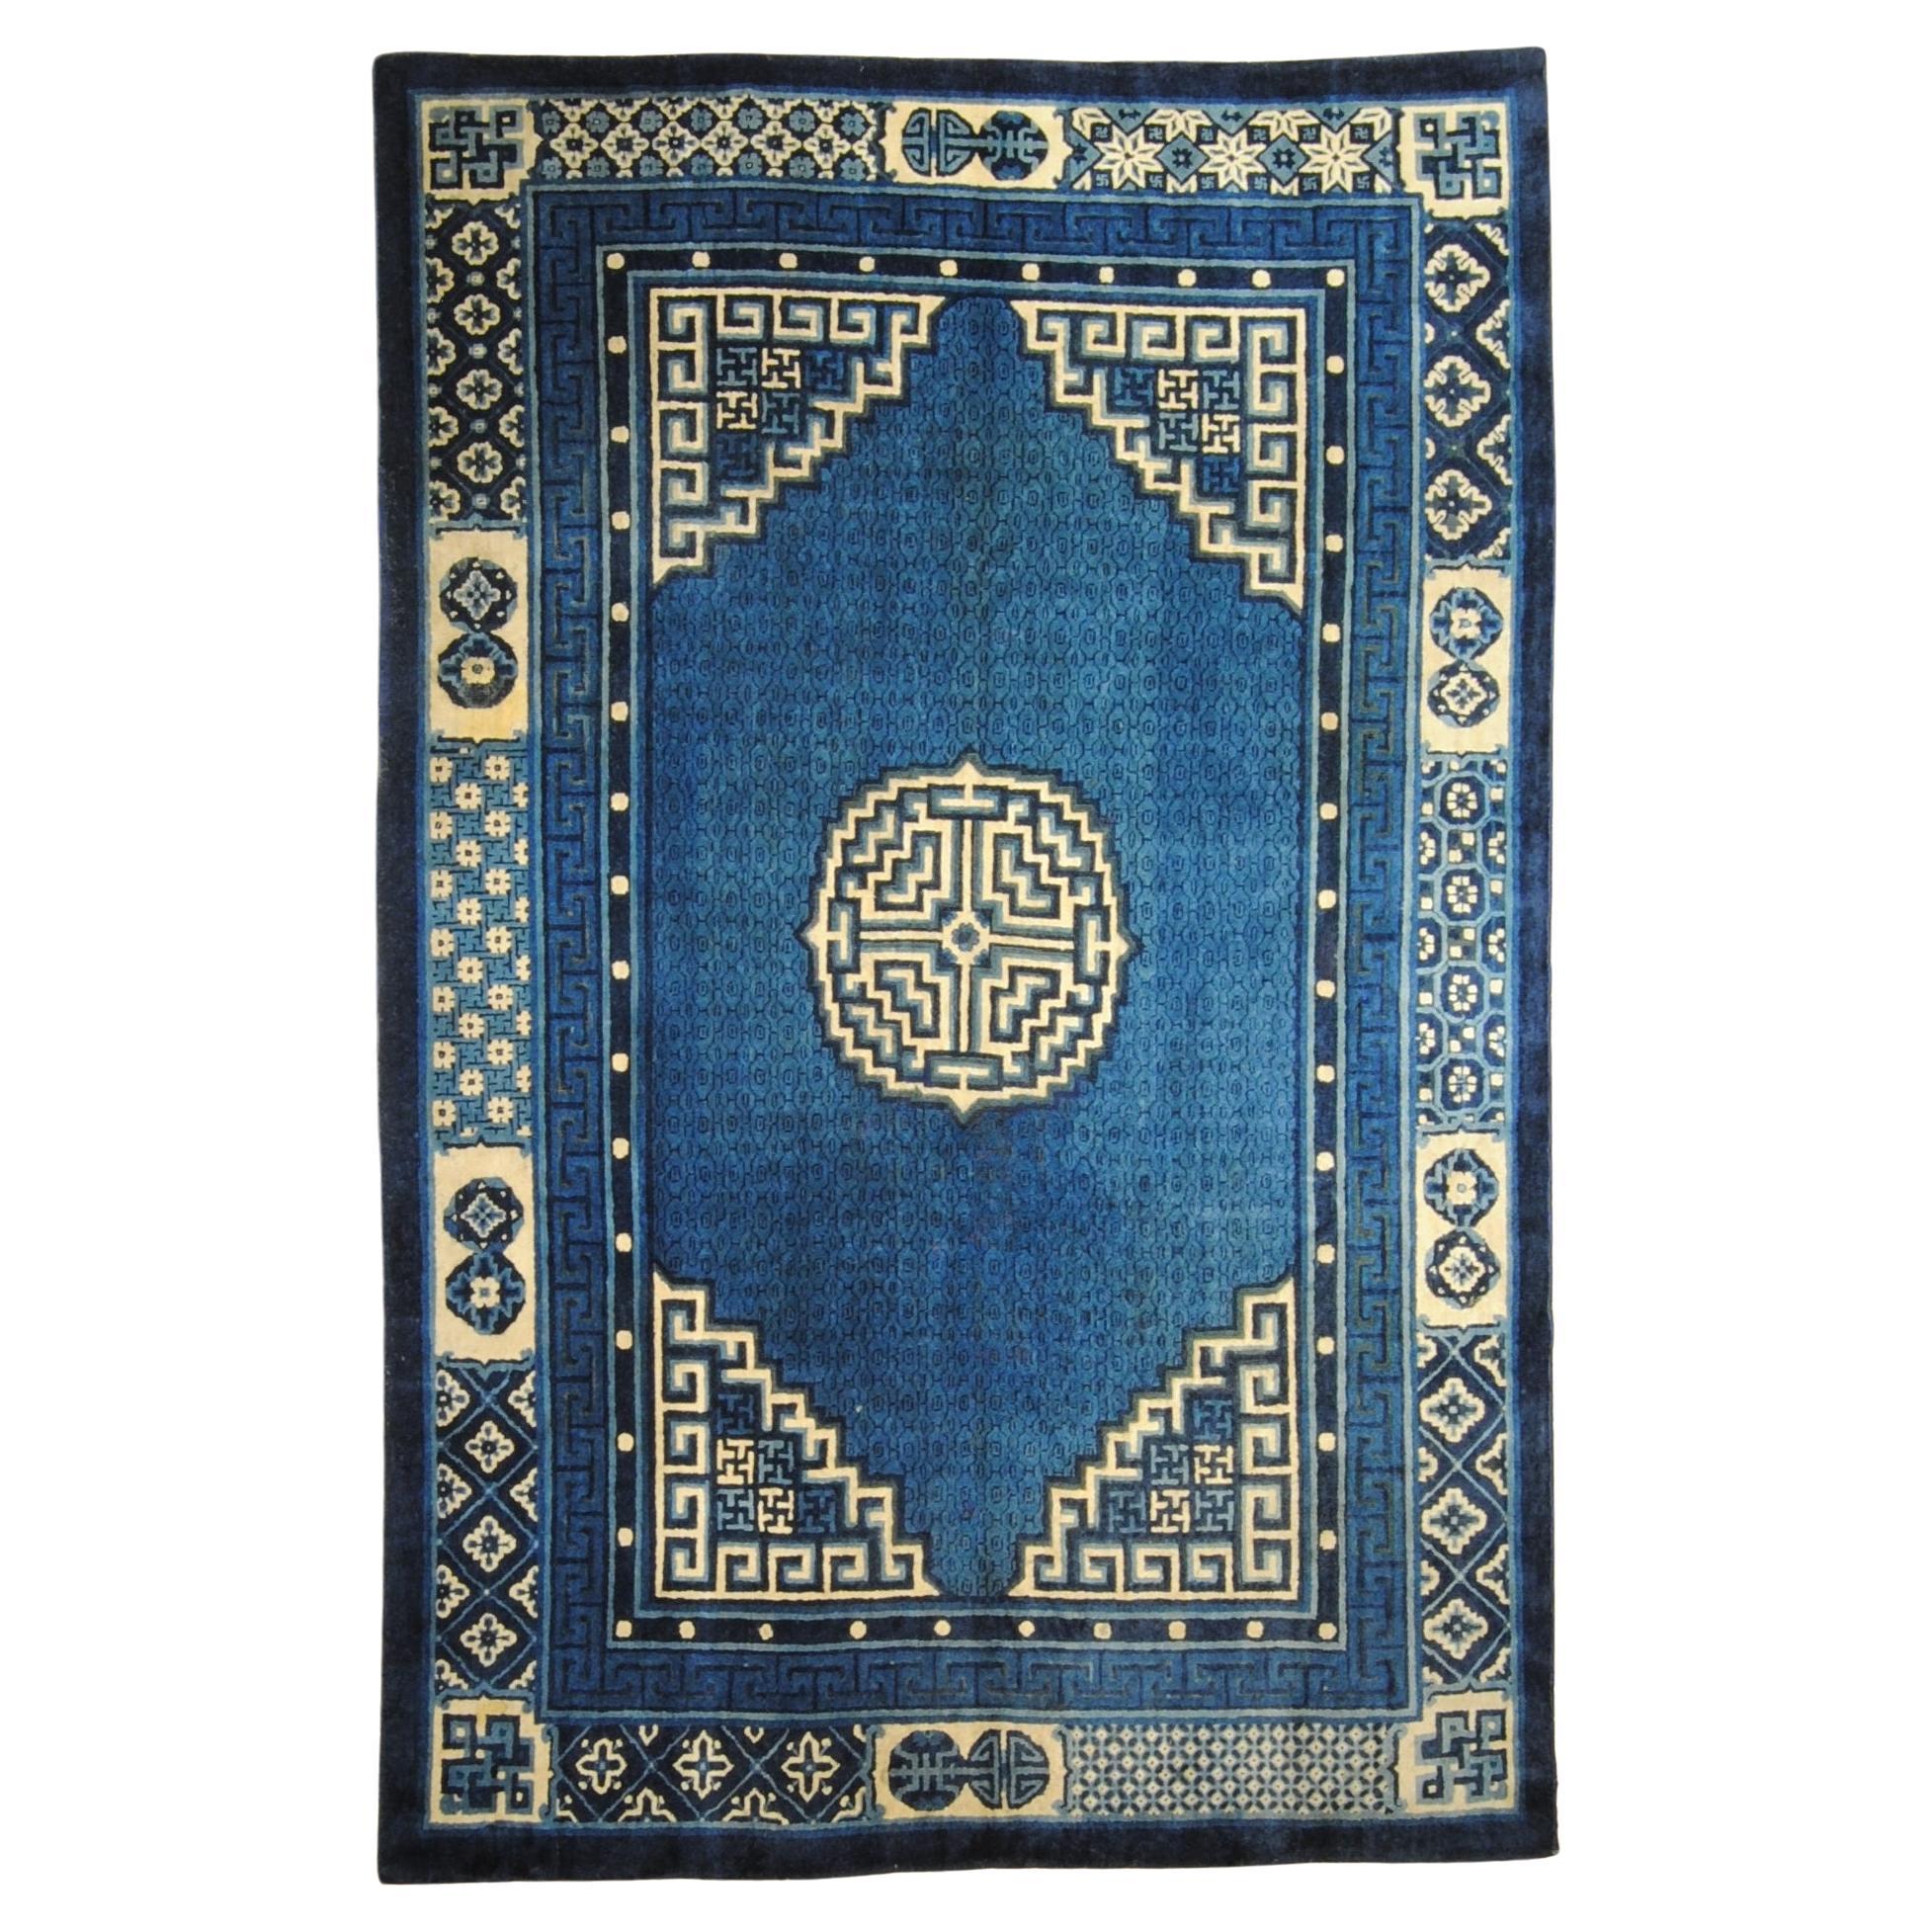 Chinesischer Pao-Tao-Teppich des frühen 20. Jahrhunderts, blau mit geometrischem Design